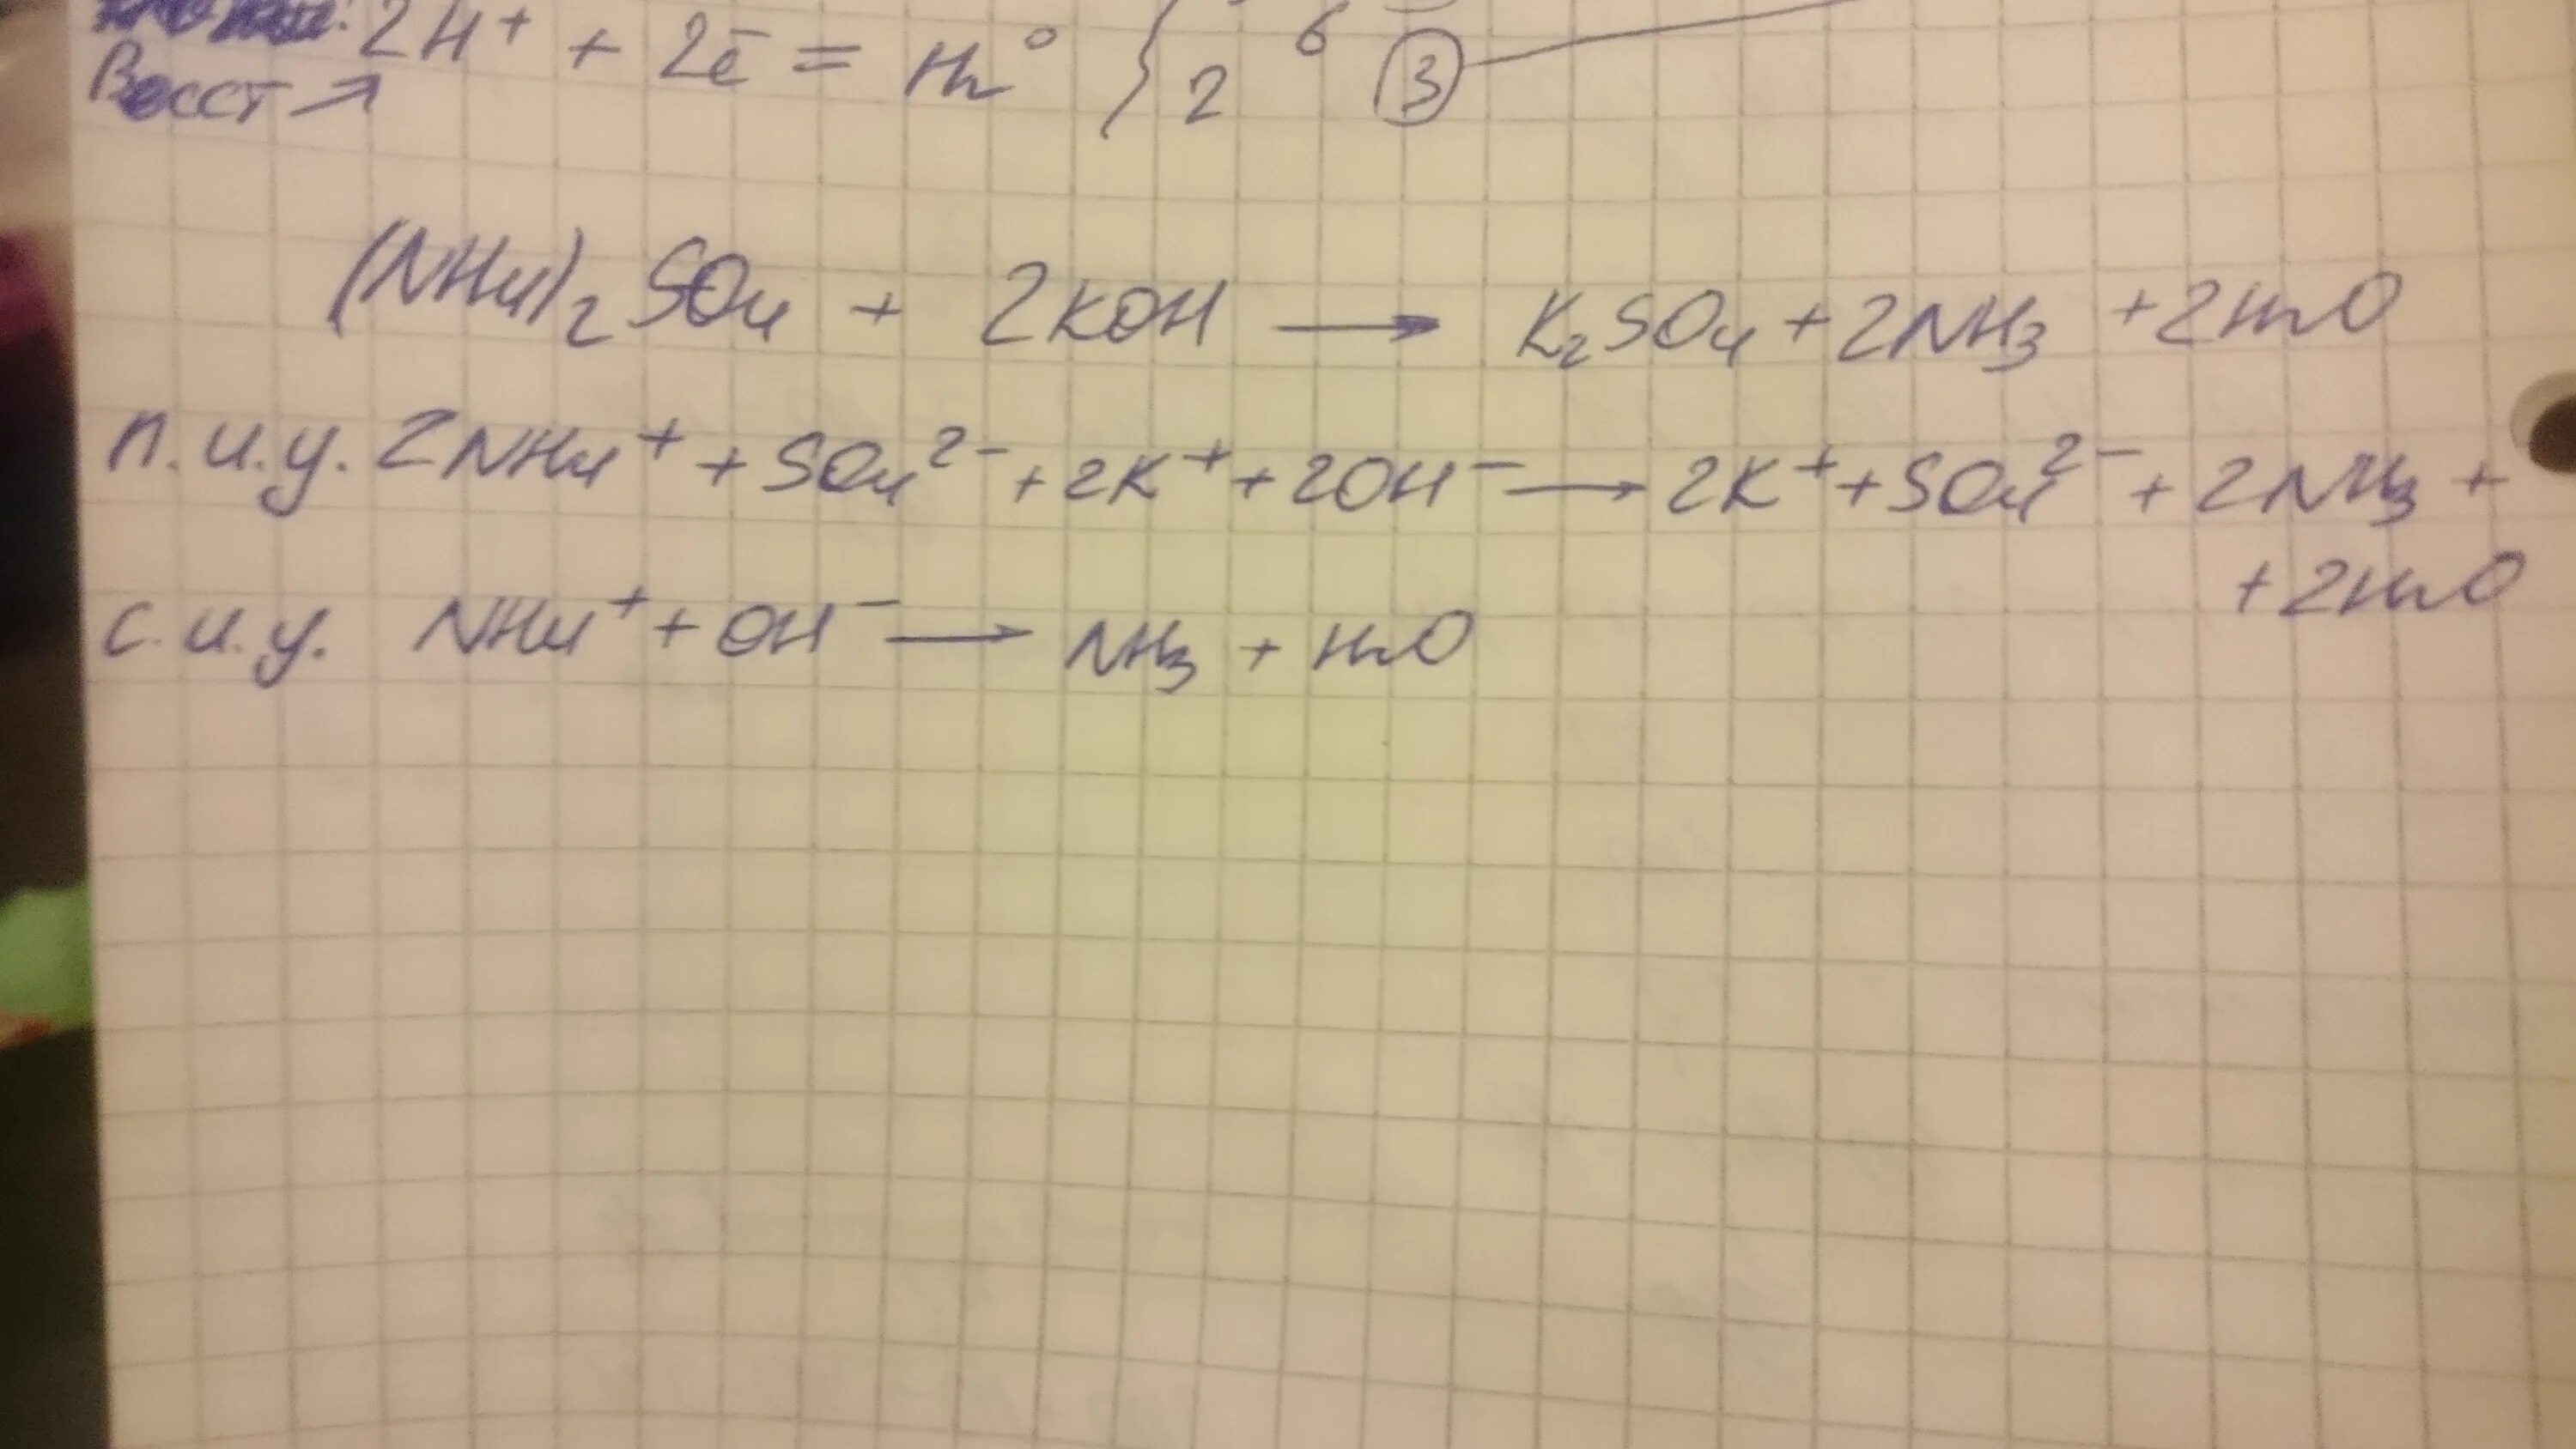 Nh42so4 koh. Nh4 2so4 Koh ионное. Ионные уравнения nh4 2so4+2koh. Nh4 2so4 Koh ионное уравнение. (Nh4)2so4 + ... = K2so4 + ....